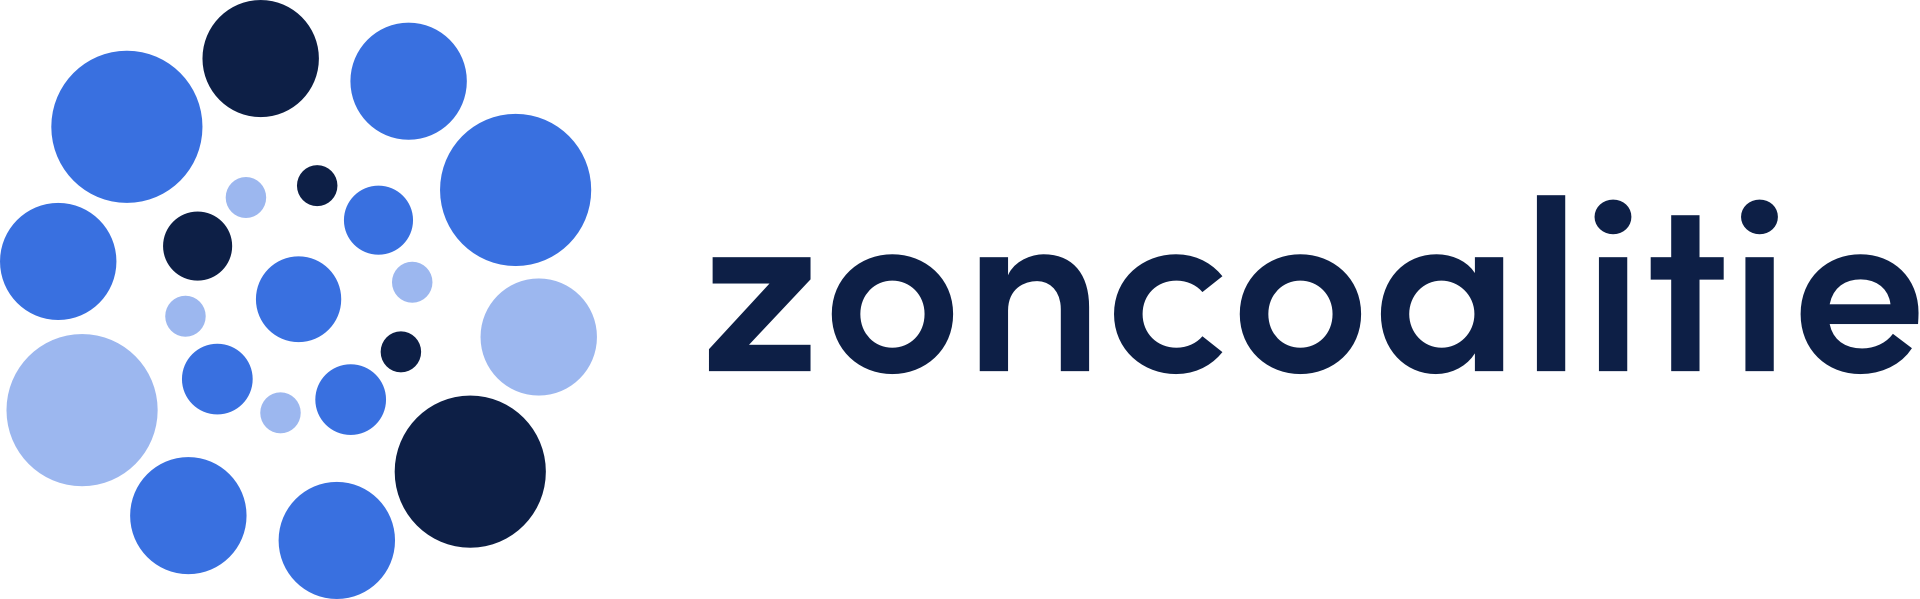 logo zc 2